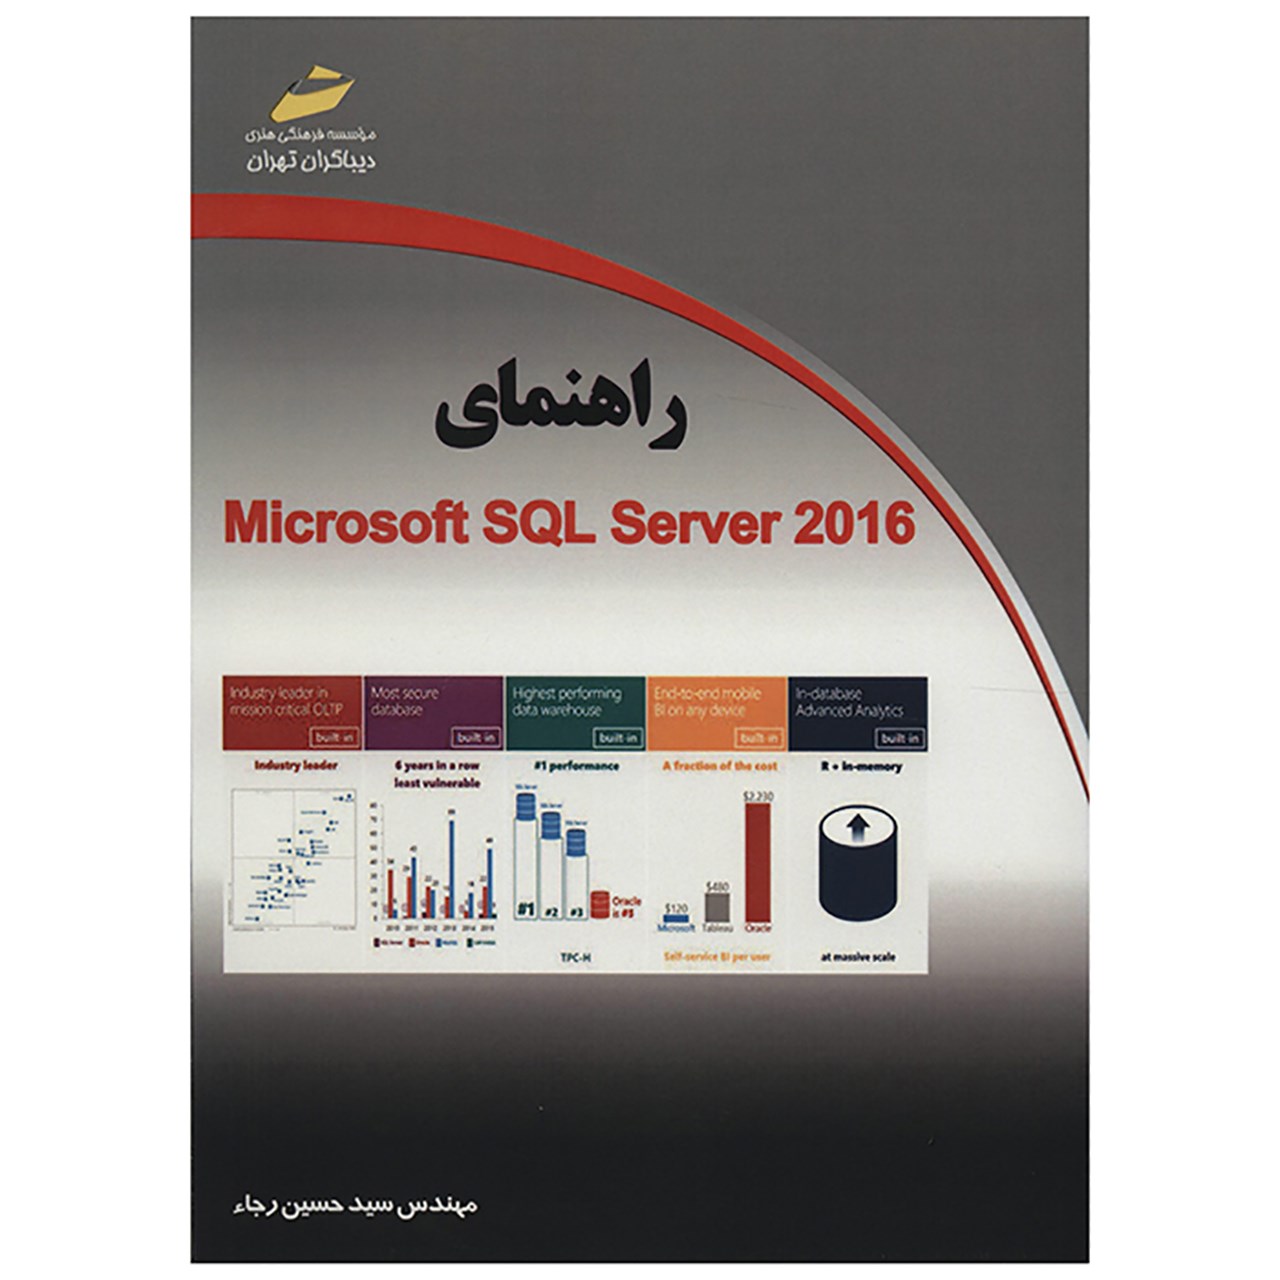 کتاب راهنمای Micosoft SQL Server 2016 اثر سید حسن رجاء